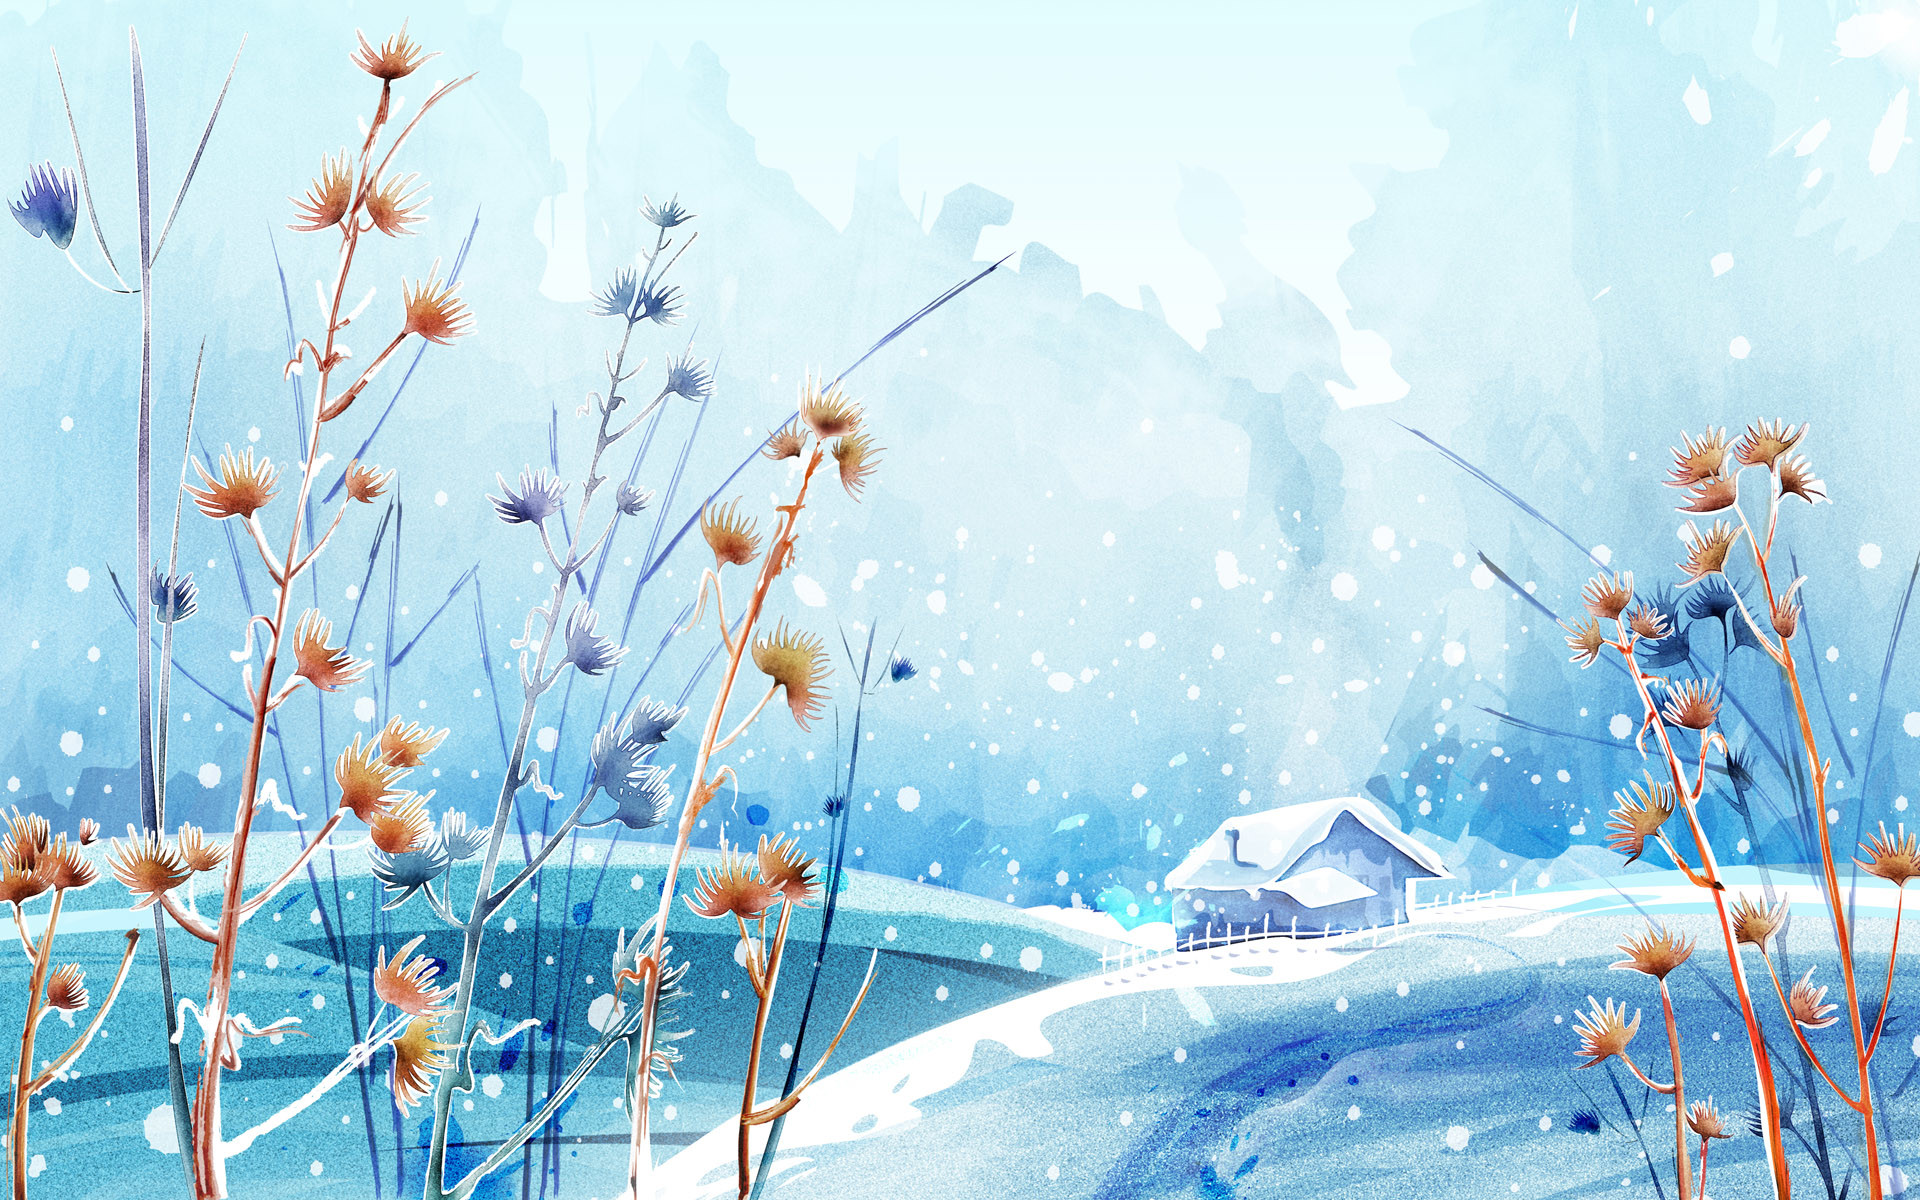 799245 Beautiful Winter Wallpaper Images Stock Photos  Vectors   Shutterstock